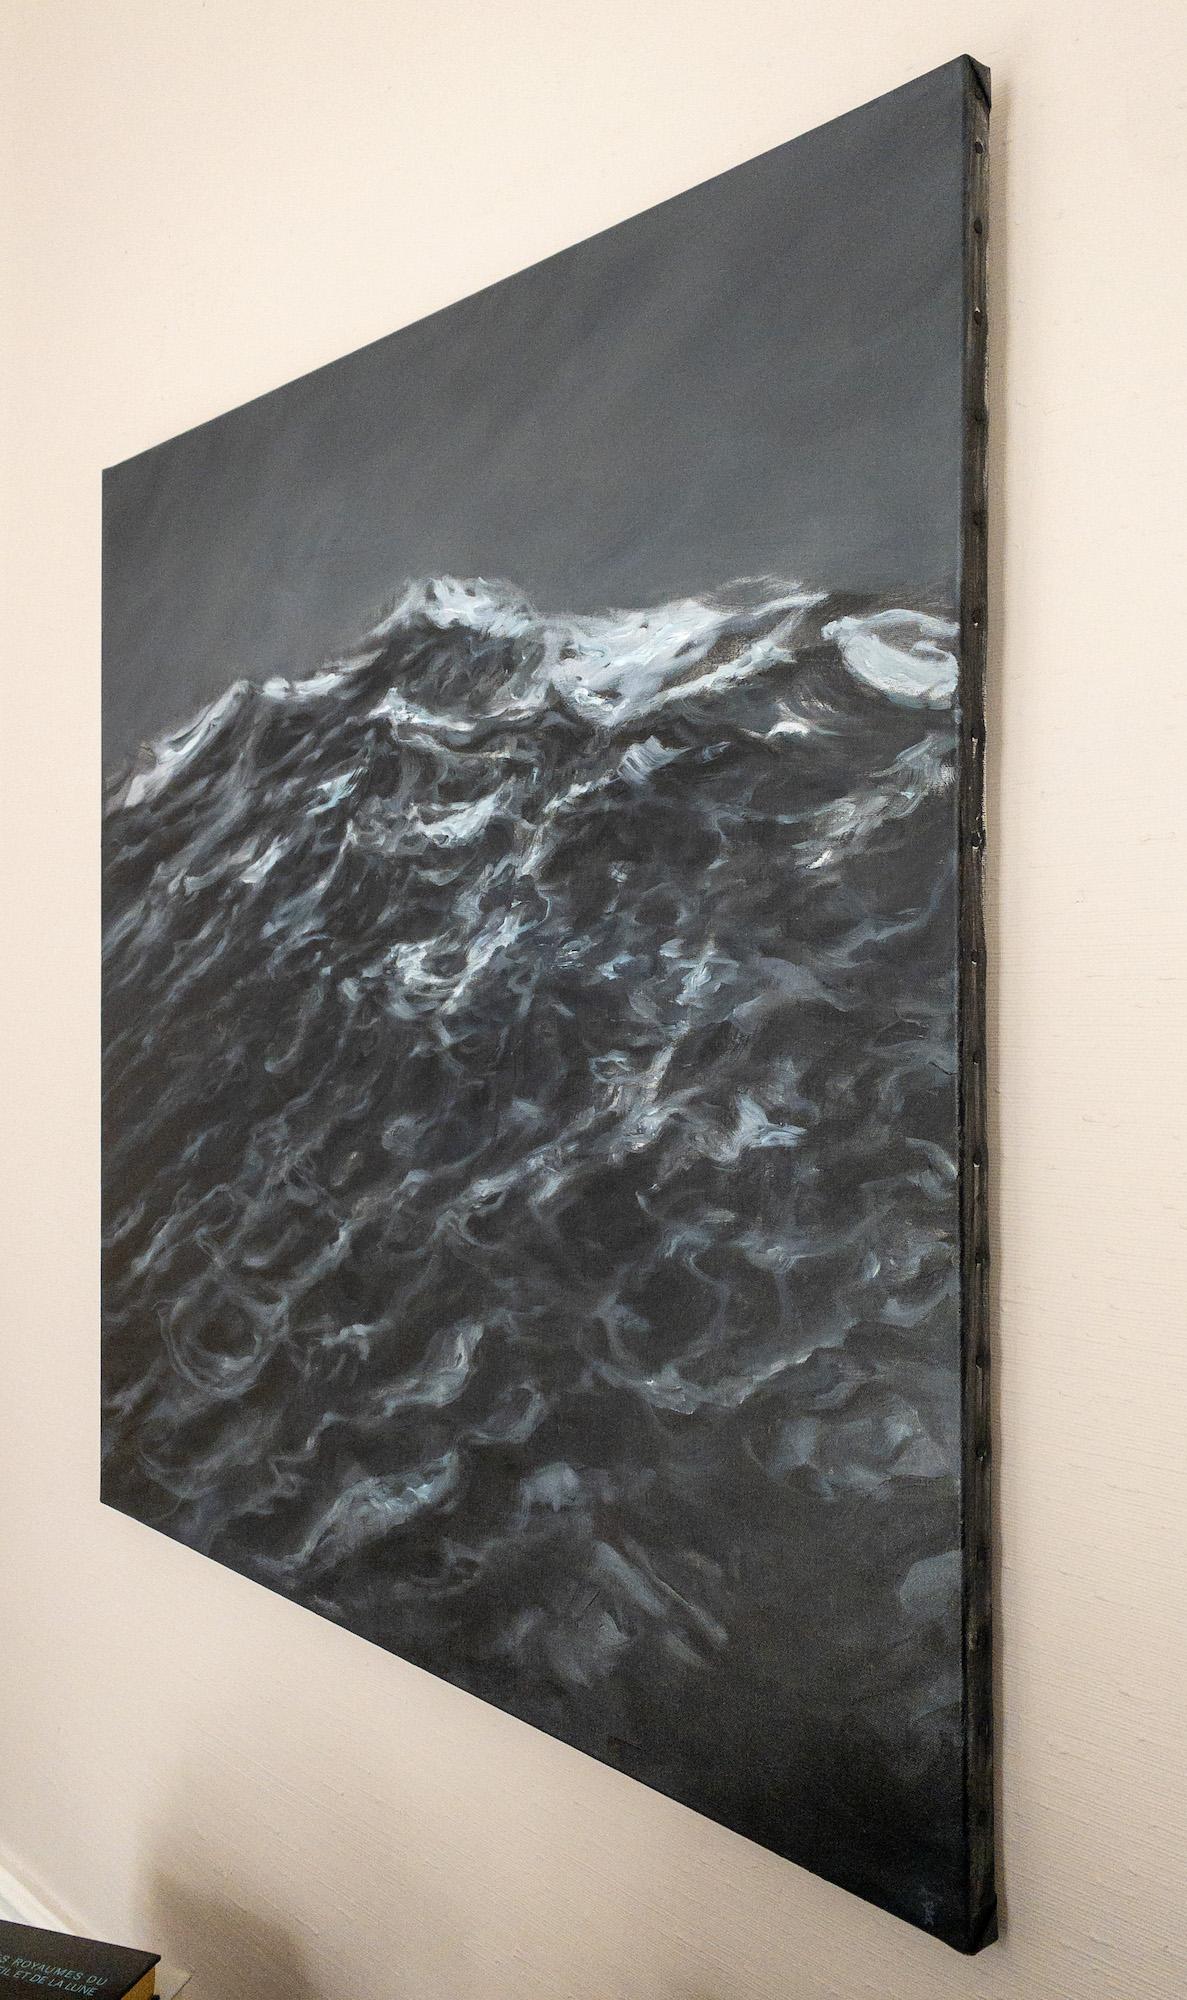 The Outburst by Franco Salas Borquez - Contemporary oil painting, seascape, wave For Sale 3